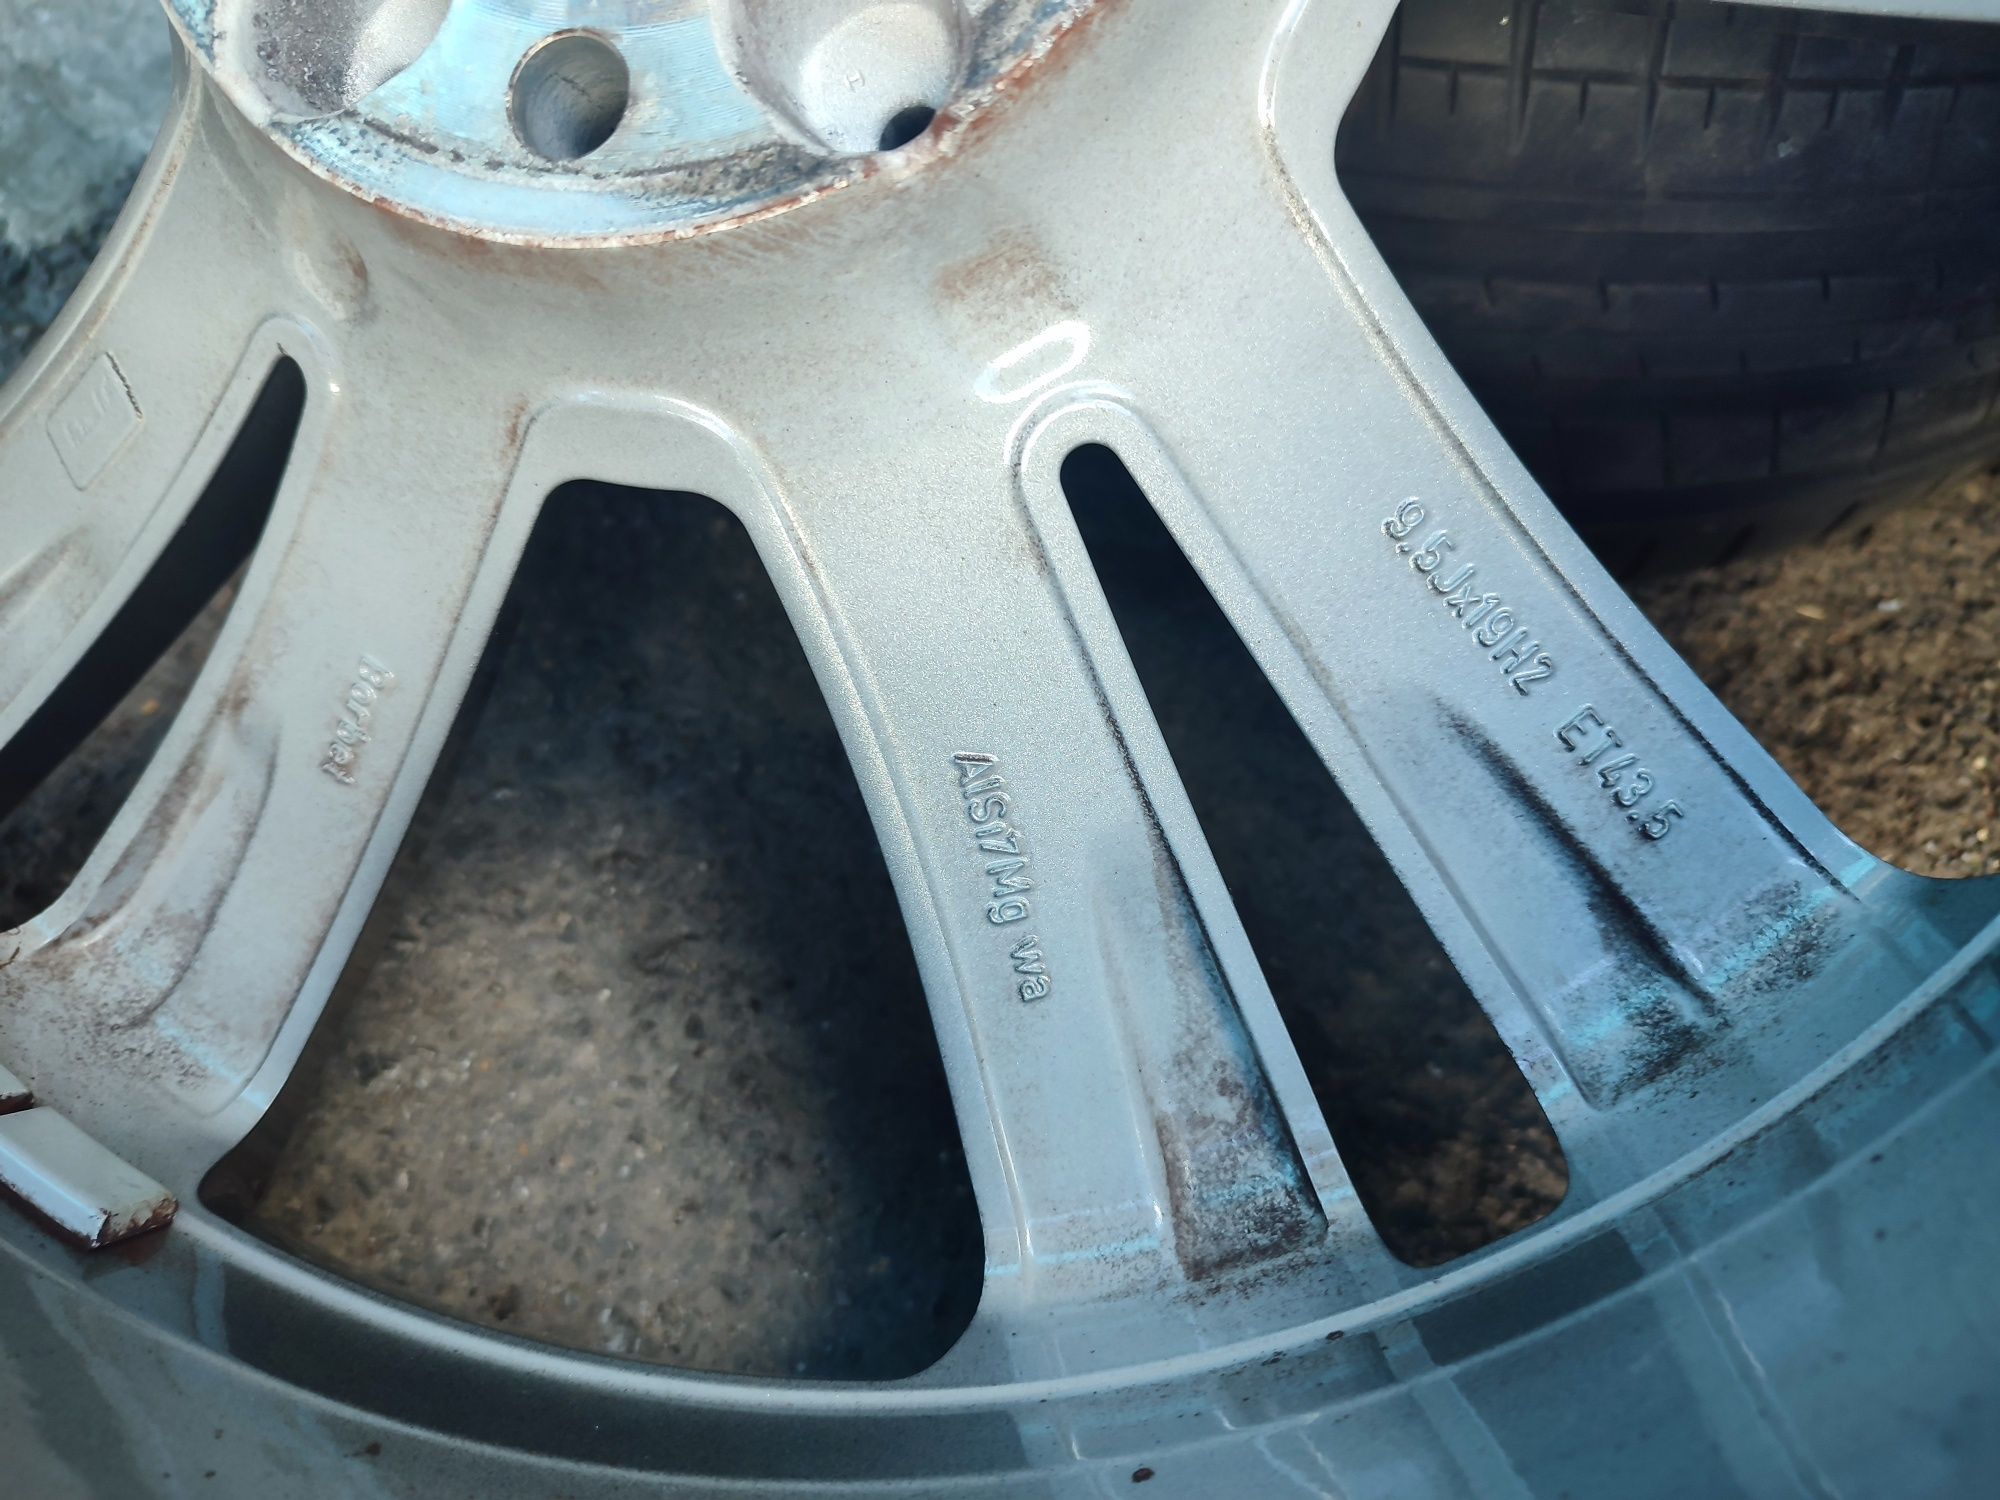 19" оригинални алуминиеви джанти с гуми за Mercedes S 222...